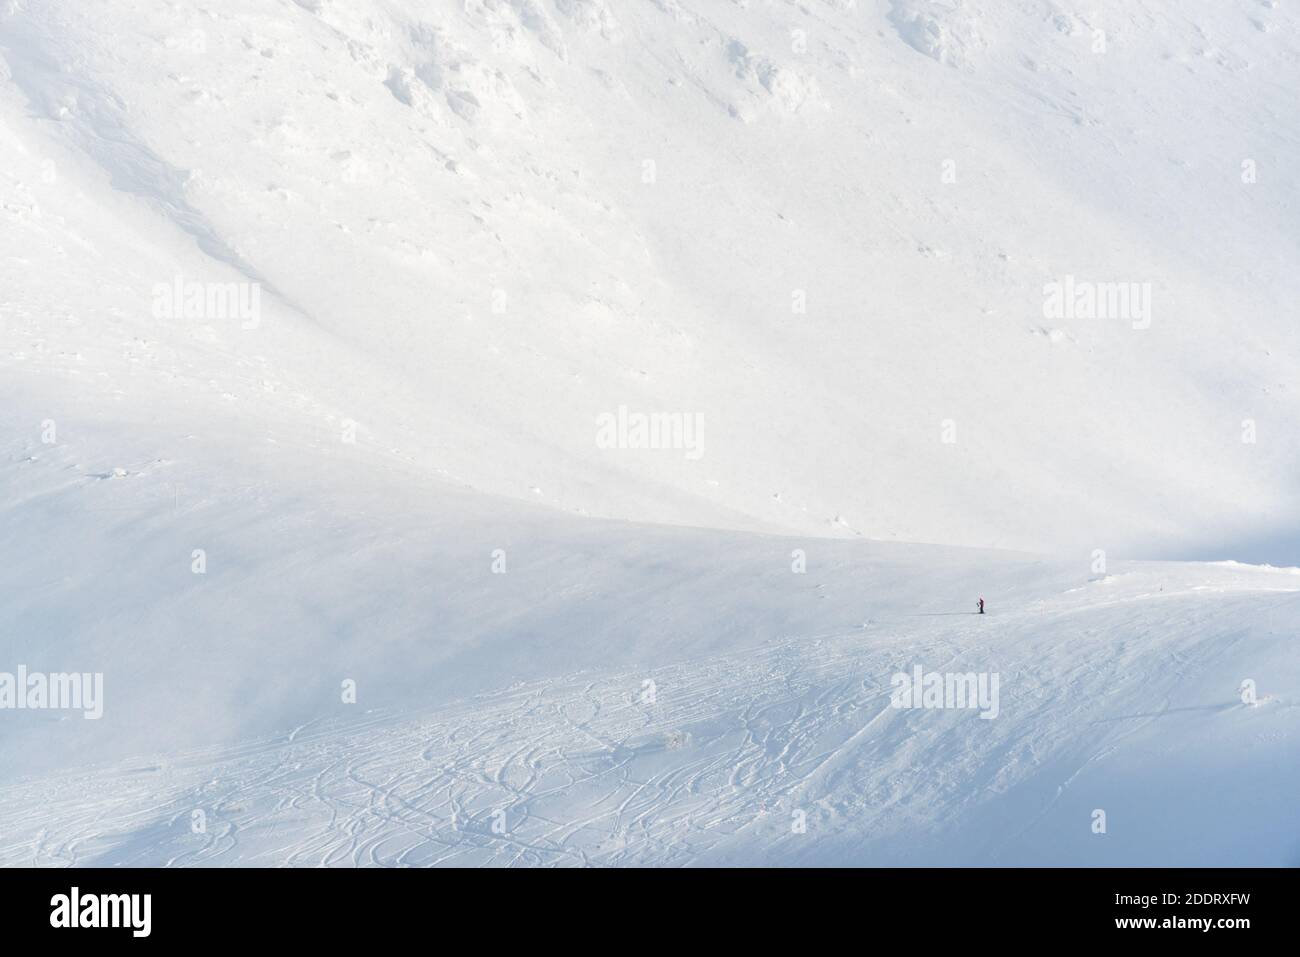 Sciatore solitario che riposa sulle montagne in una stazione sciistica. Il piccolo sciatore dà un senso di scala. Foto Stock